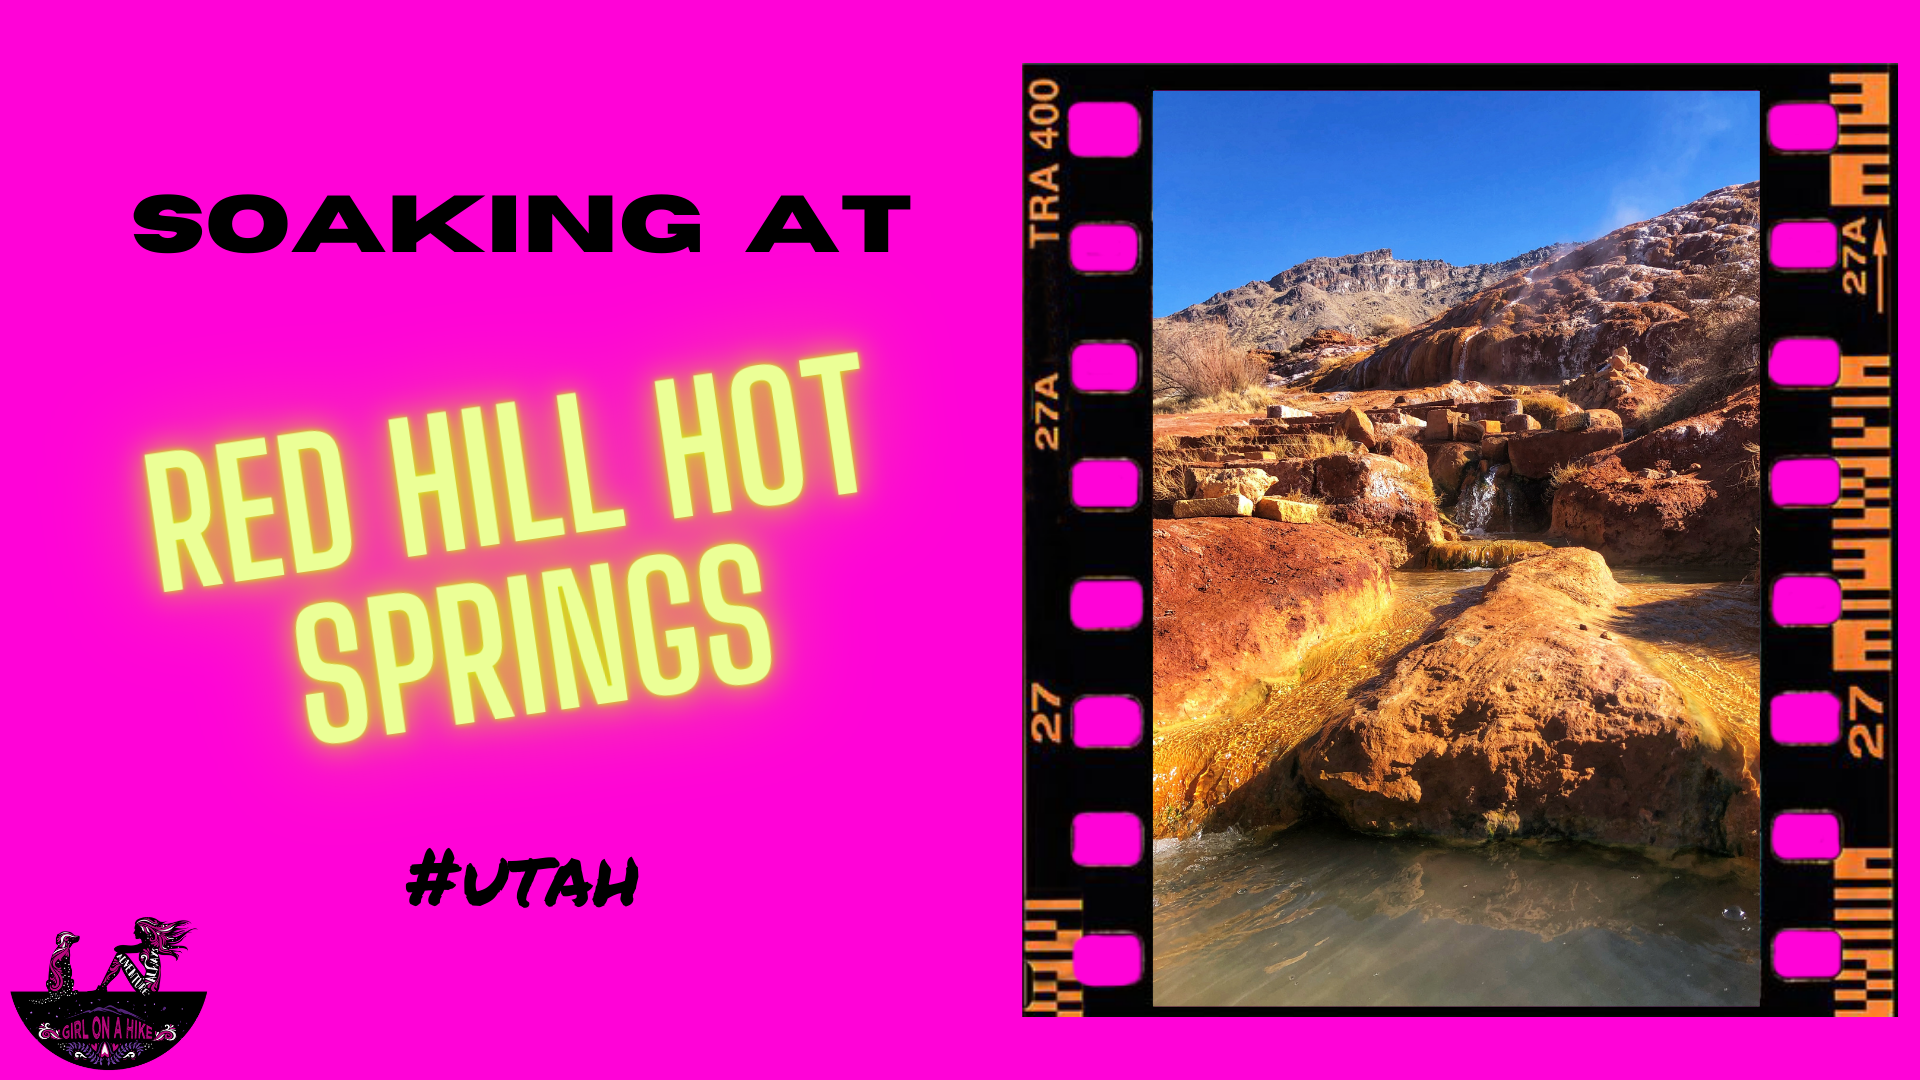 Soaking at Red Hill Hot Springs, Utah